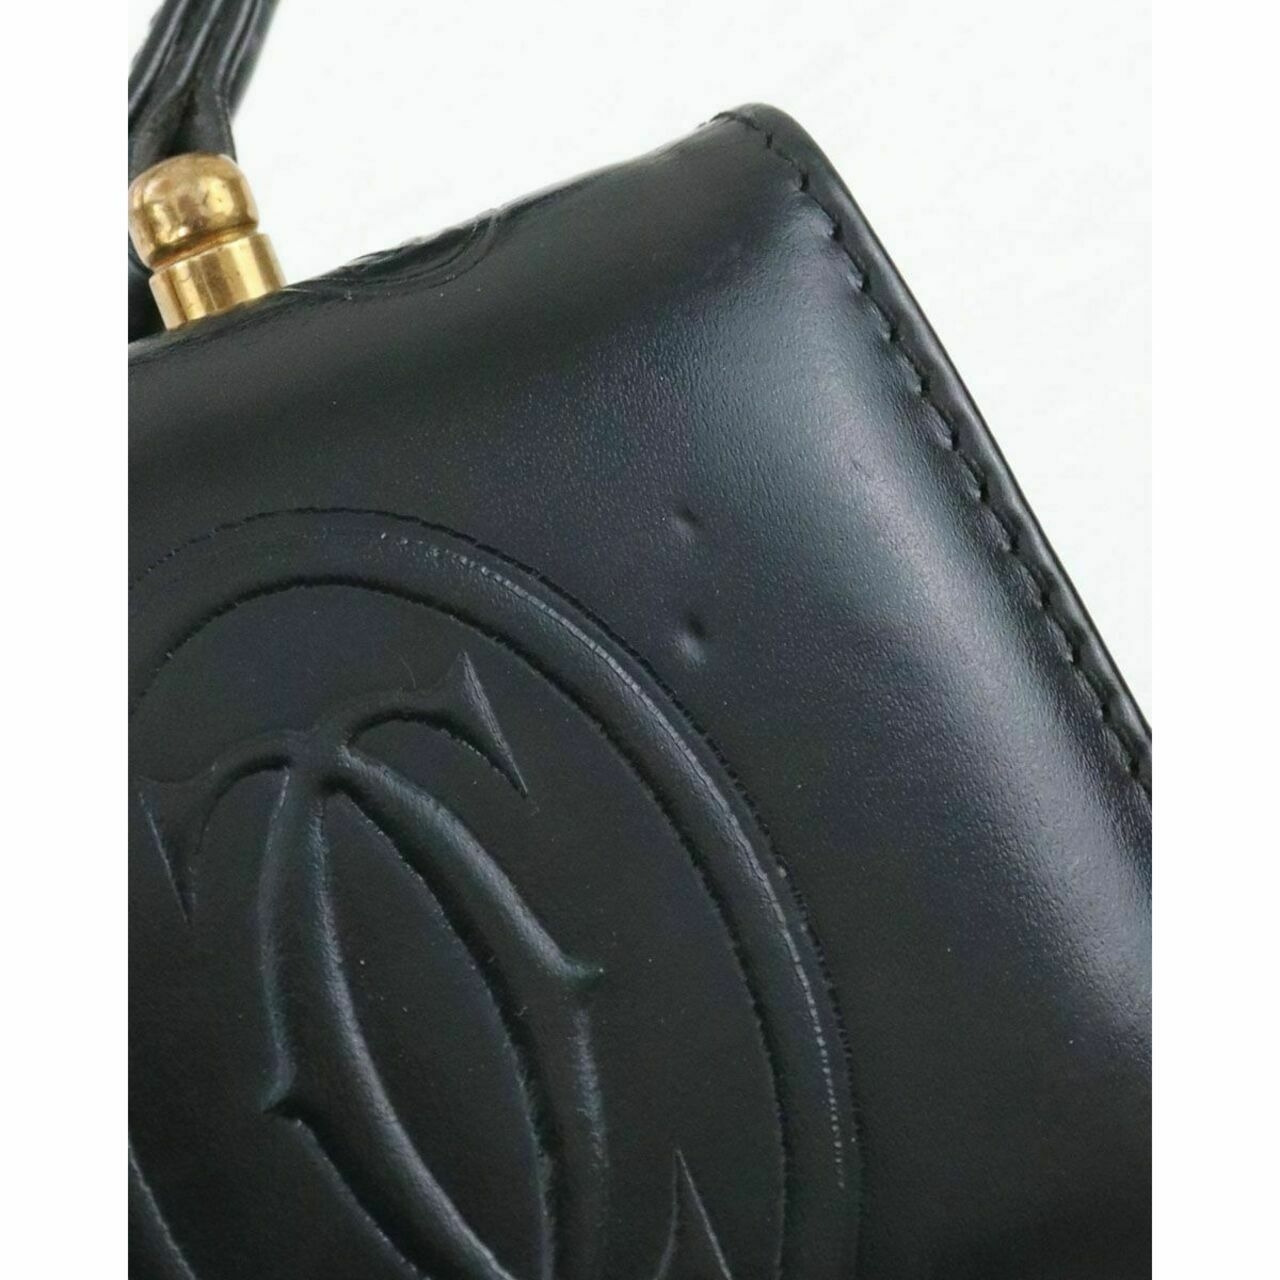 Cartier Black Handbag